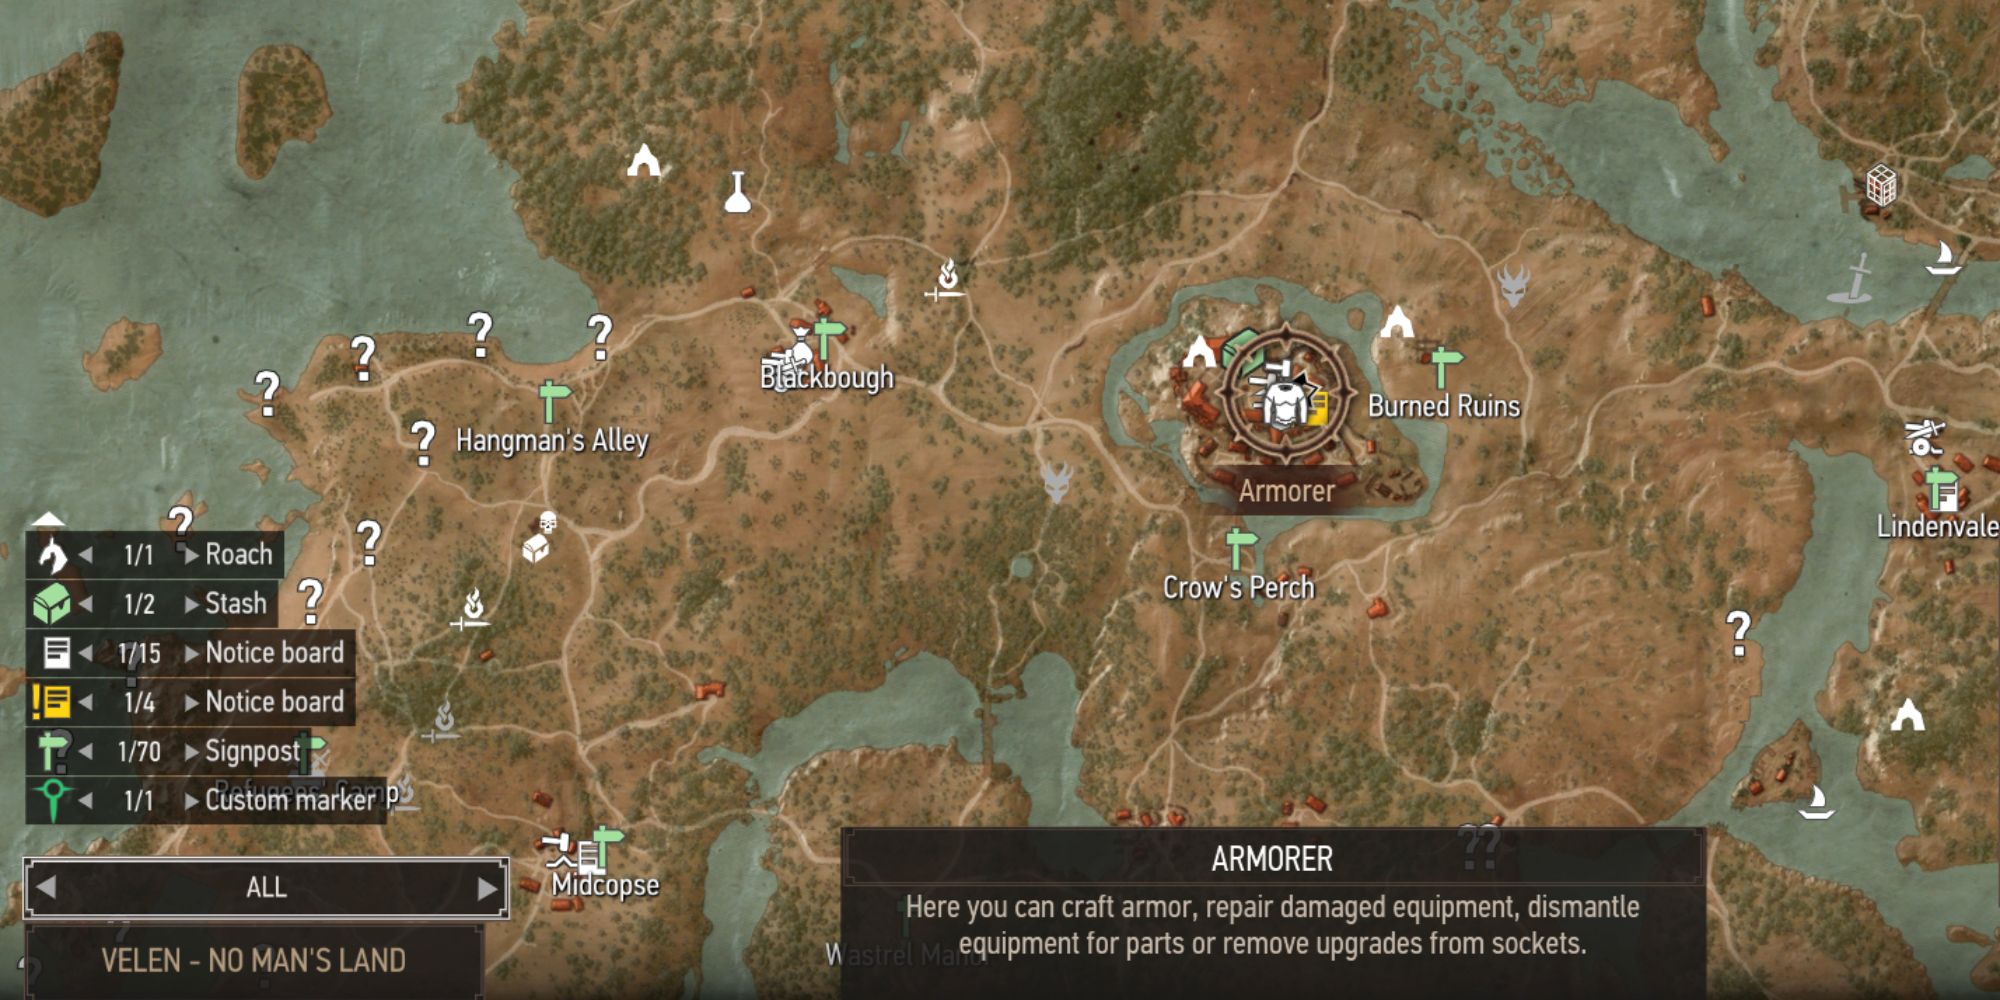 Ubicación do mapa de The Witcher 3 Yoana